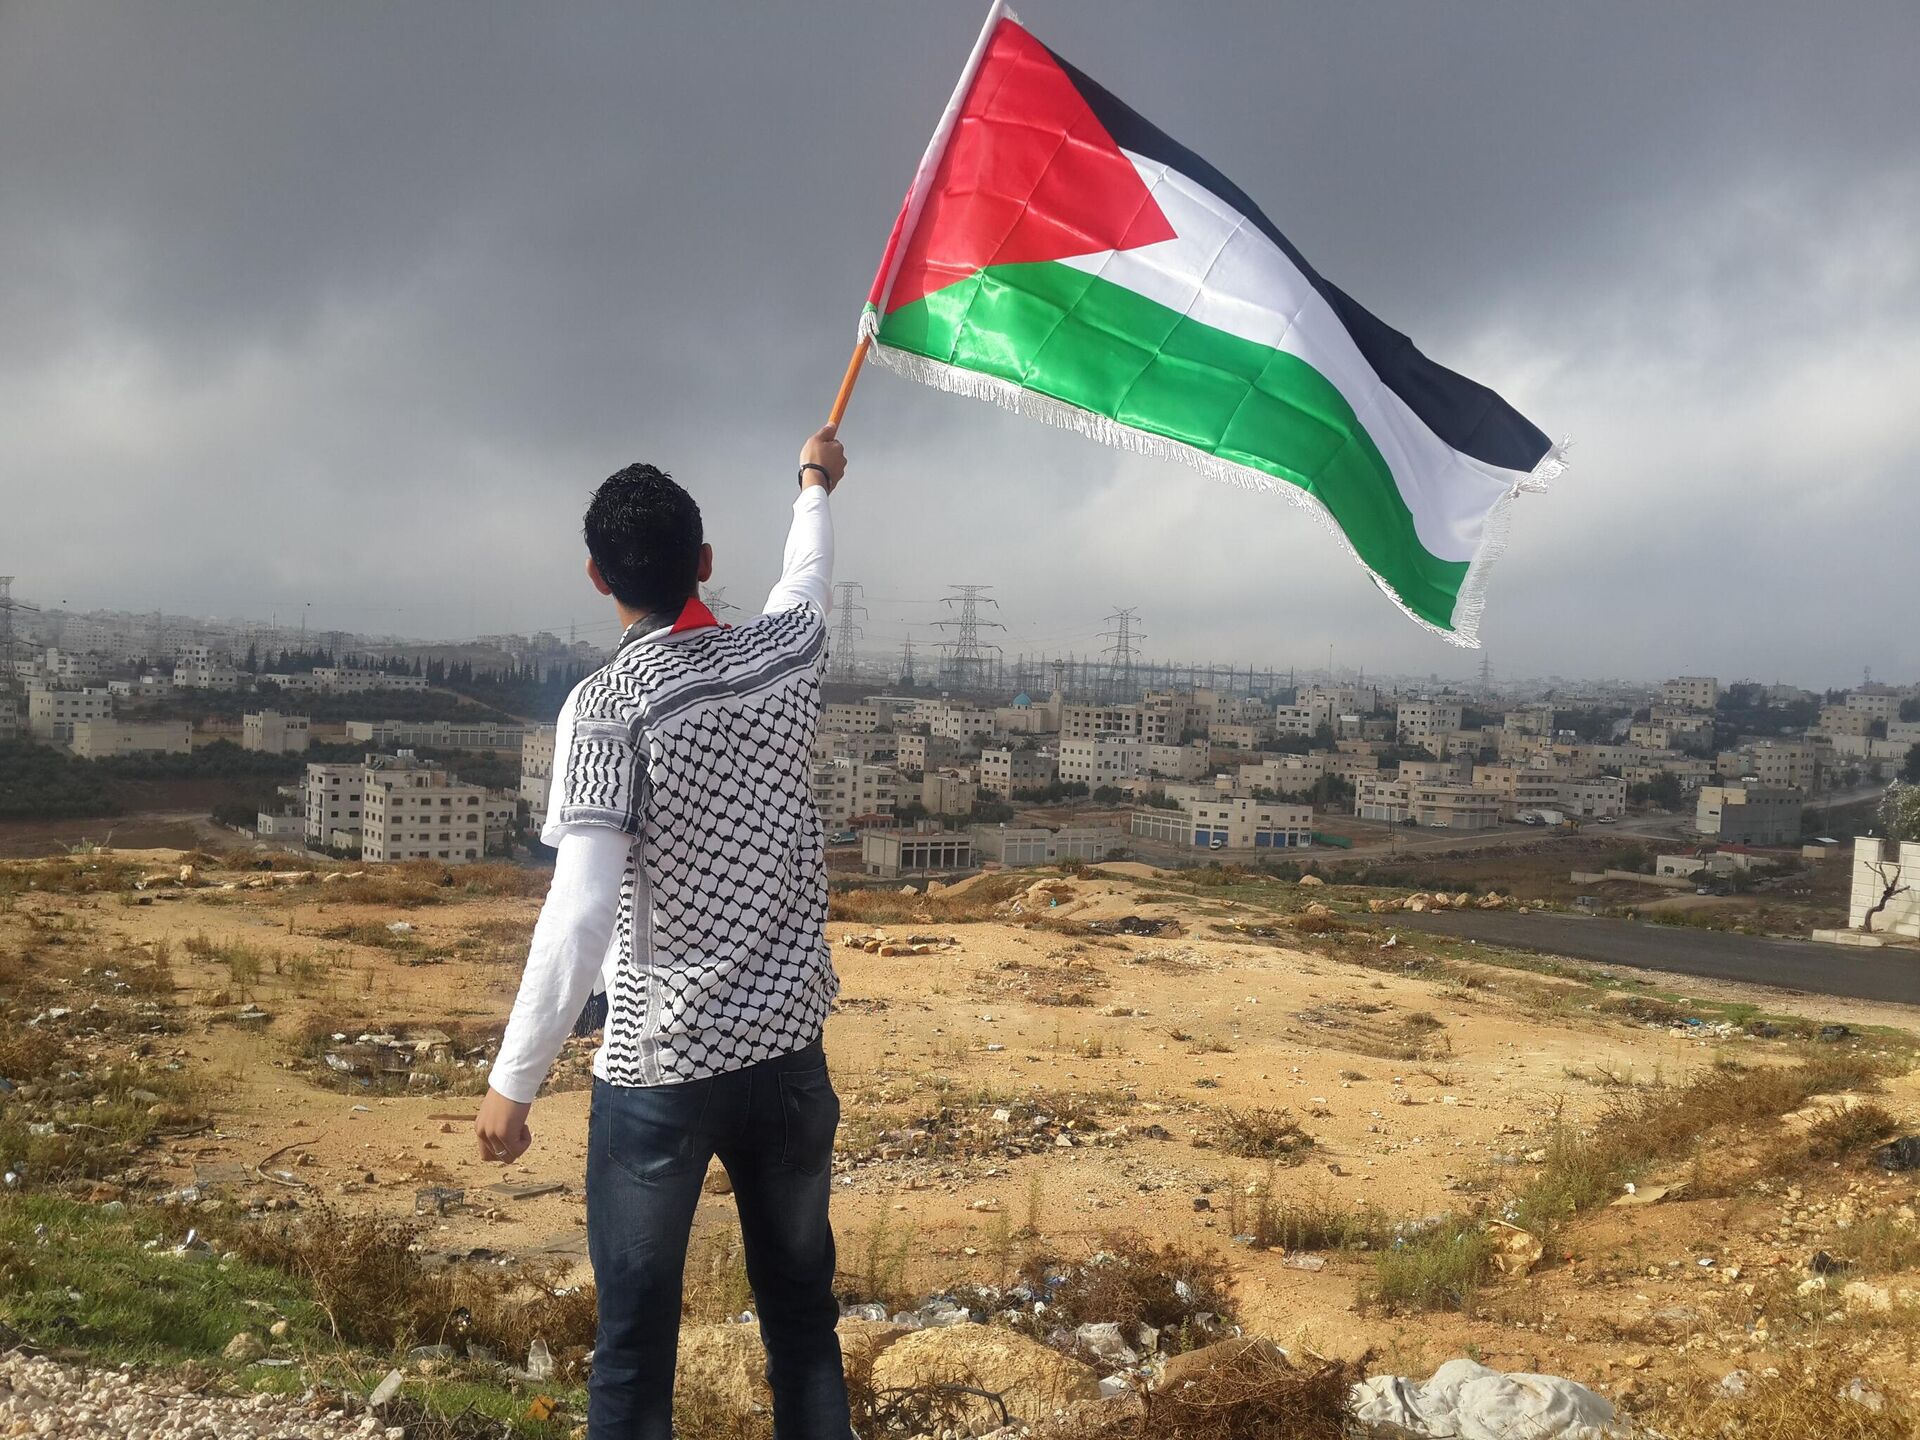 EEUU se opone al izado de la bandera de Palestina en la sede de la ONU